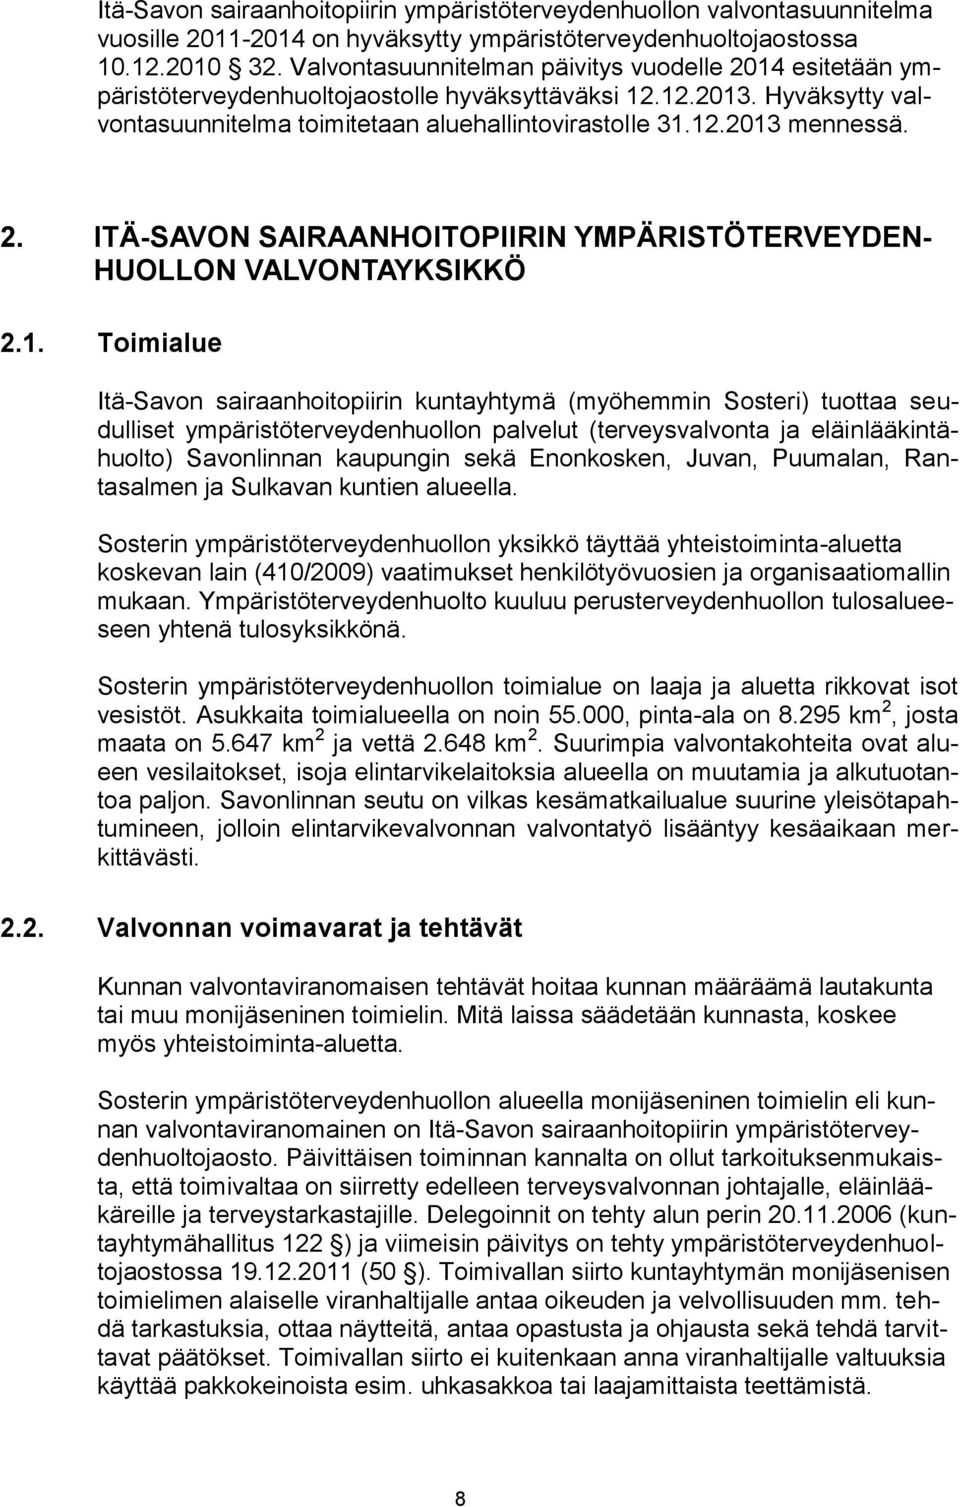 2. ITÄ-SAVON SAIRAANHOITOPIIRIN YMPÄRISTÖTERVEYDEN- HUOLLON VALVONTAYKSIKKÖ 2.1.